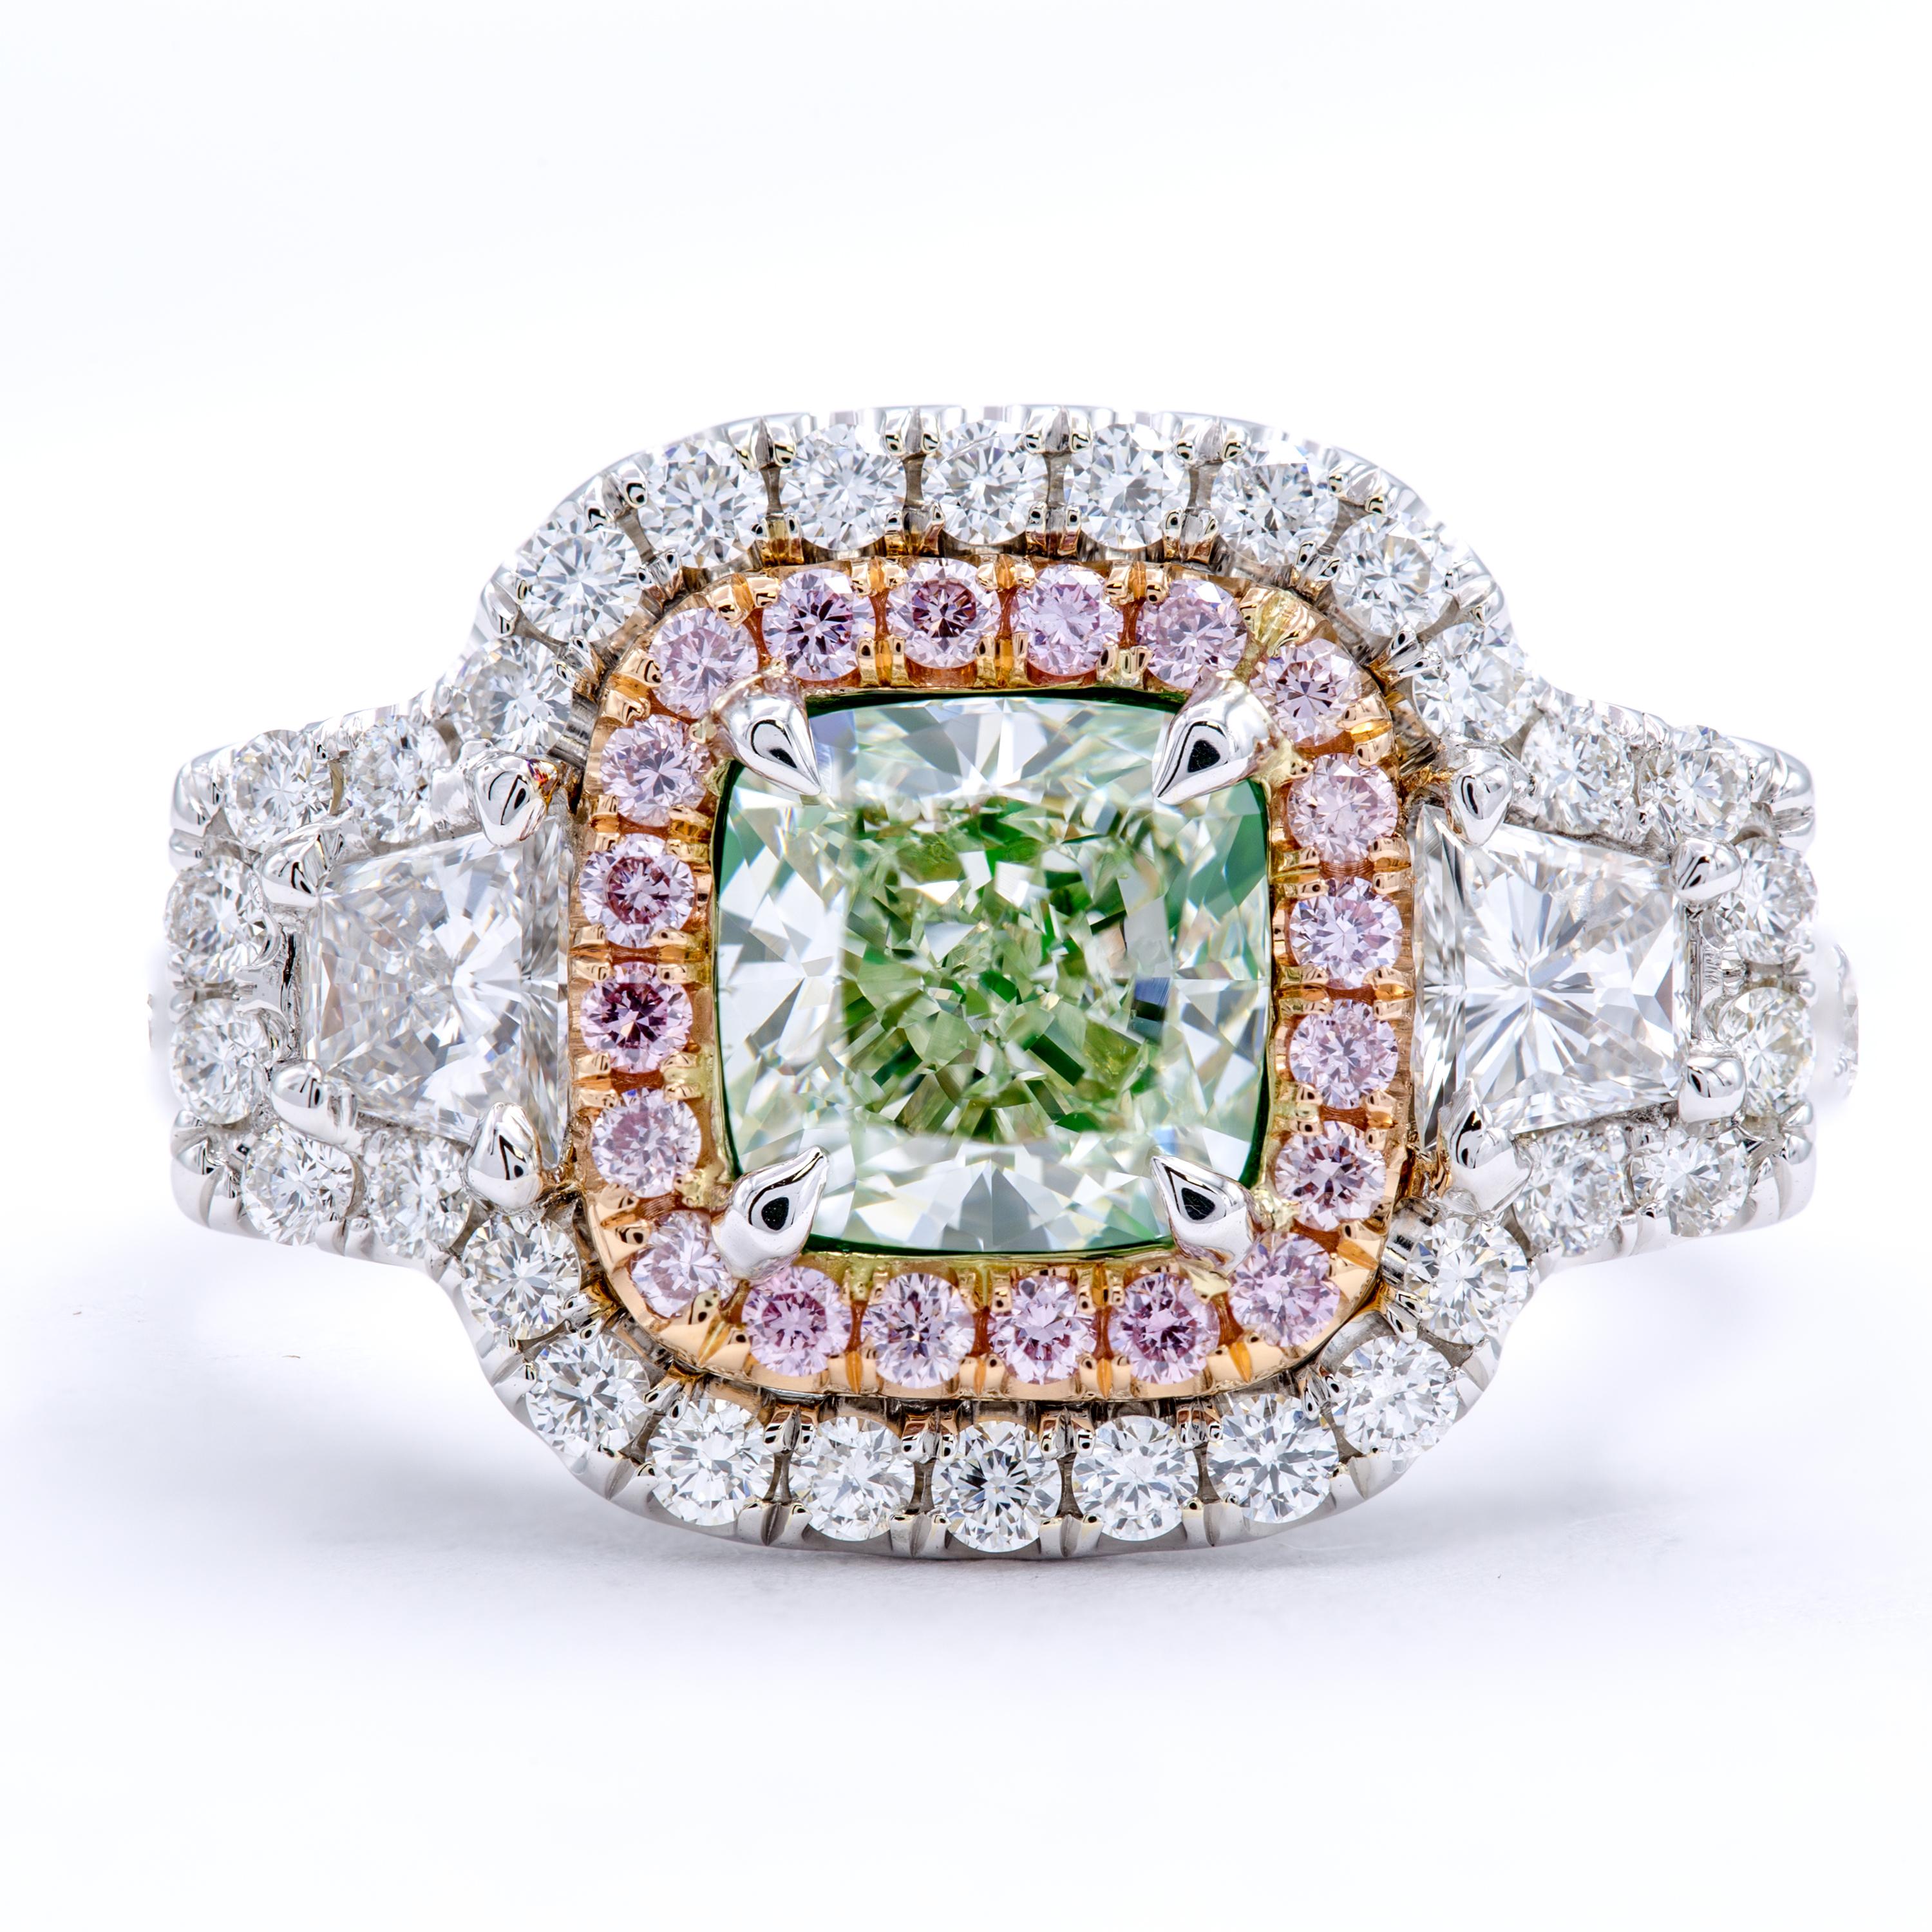 Ein GIA-zertifizierter, natürlicher, hellgrüner Diamant mit einer außergewöhnlich seltenen Farbe in einer schönen Kissenschliffform. Zwei trapezförmige Seitensteine setzen einen wunderbaren Akzent auf einem Band aus 18 Kt. Weiß- und Roségold, das